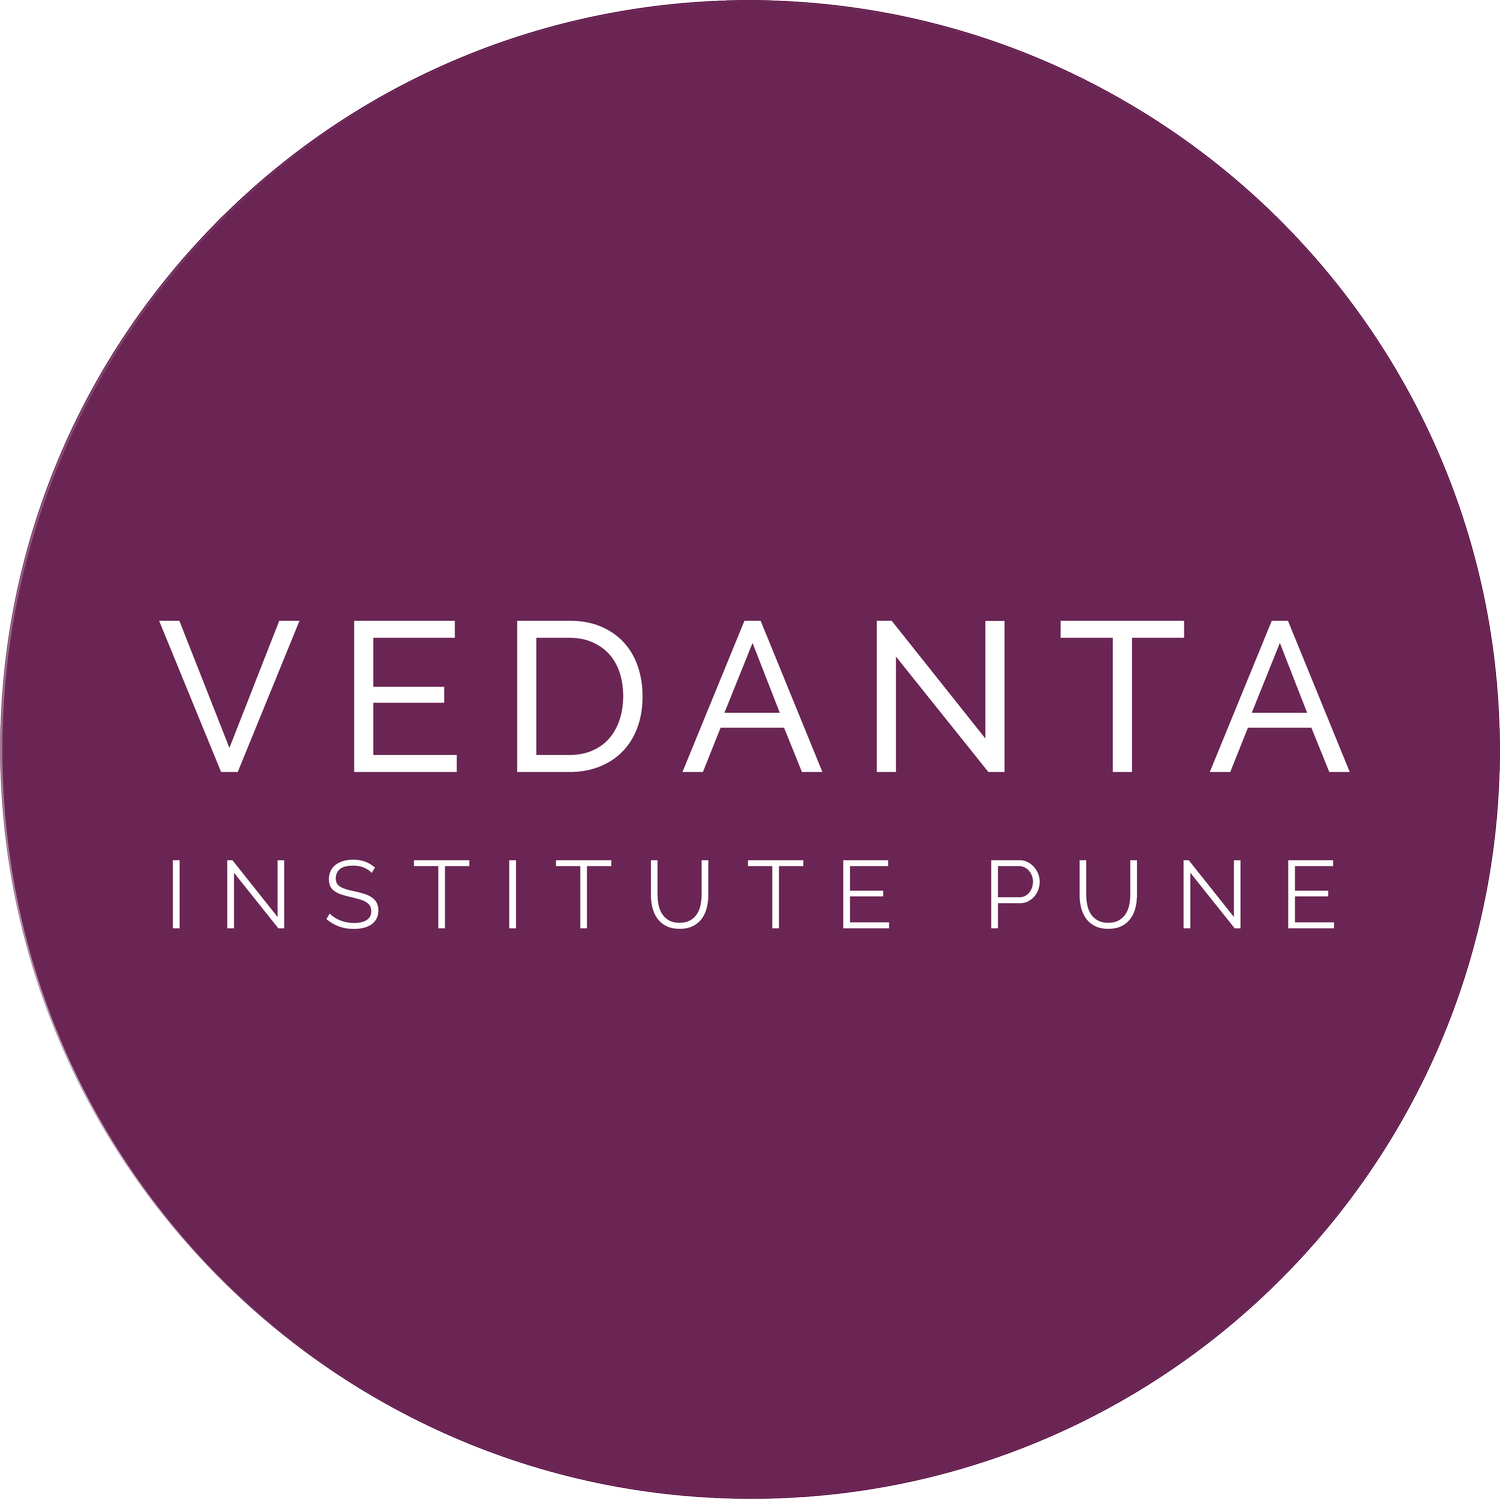 Vedanta Institute Pune